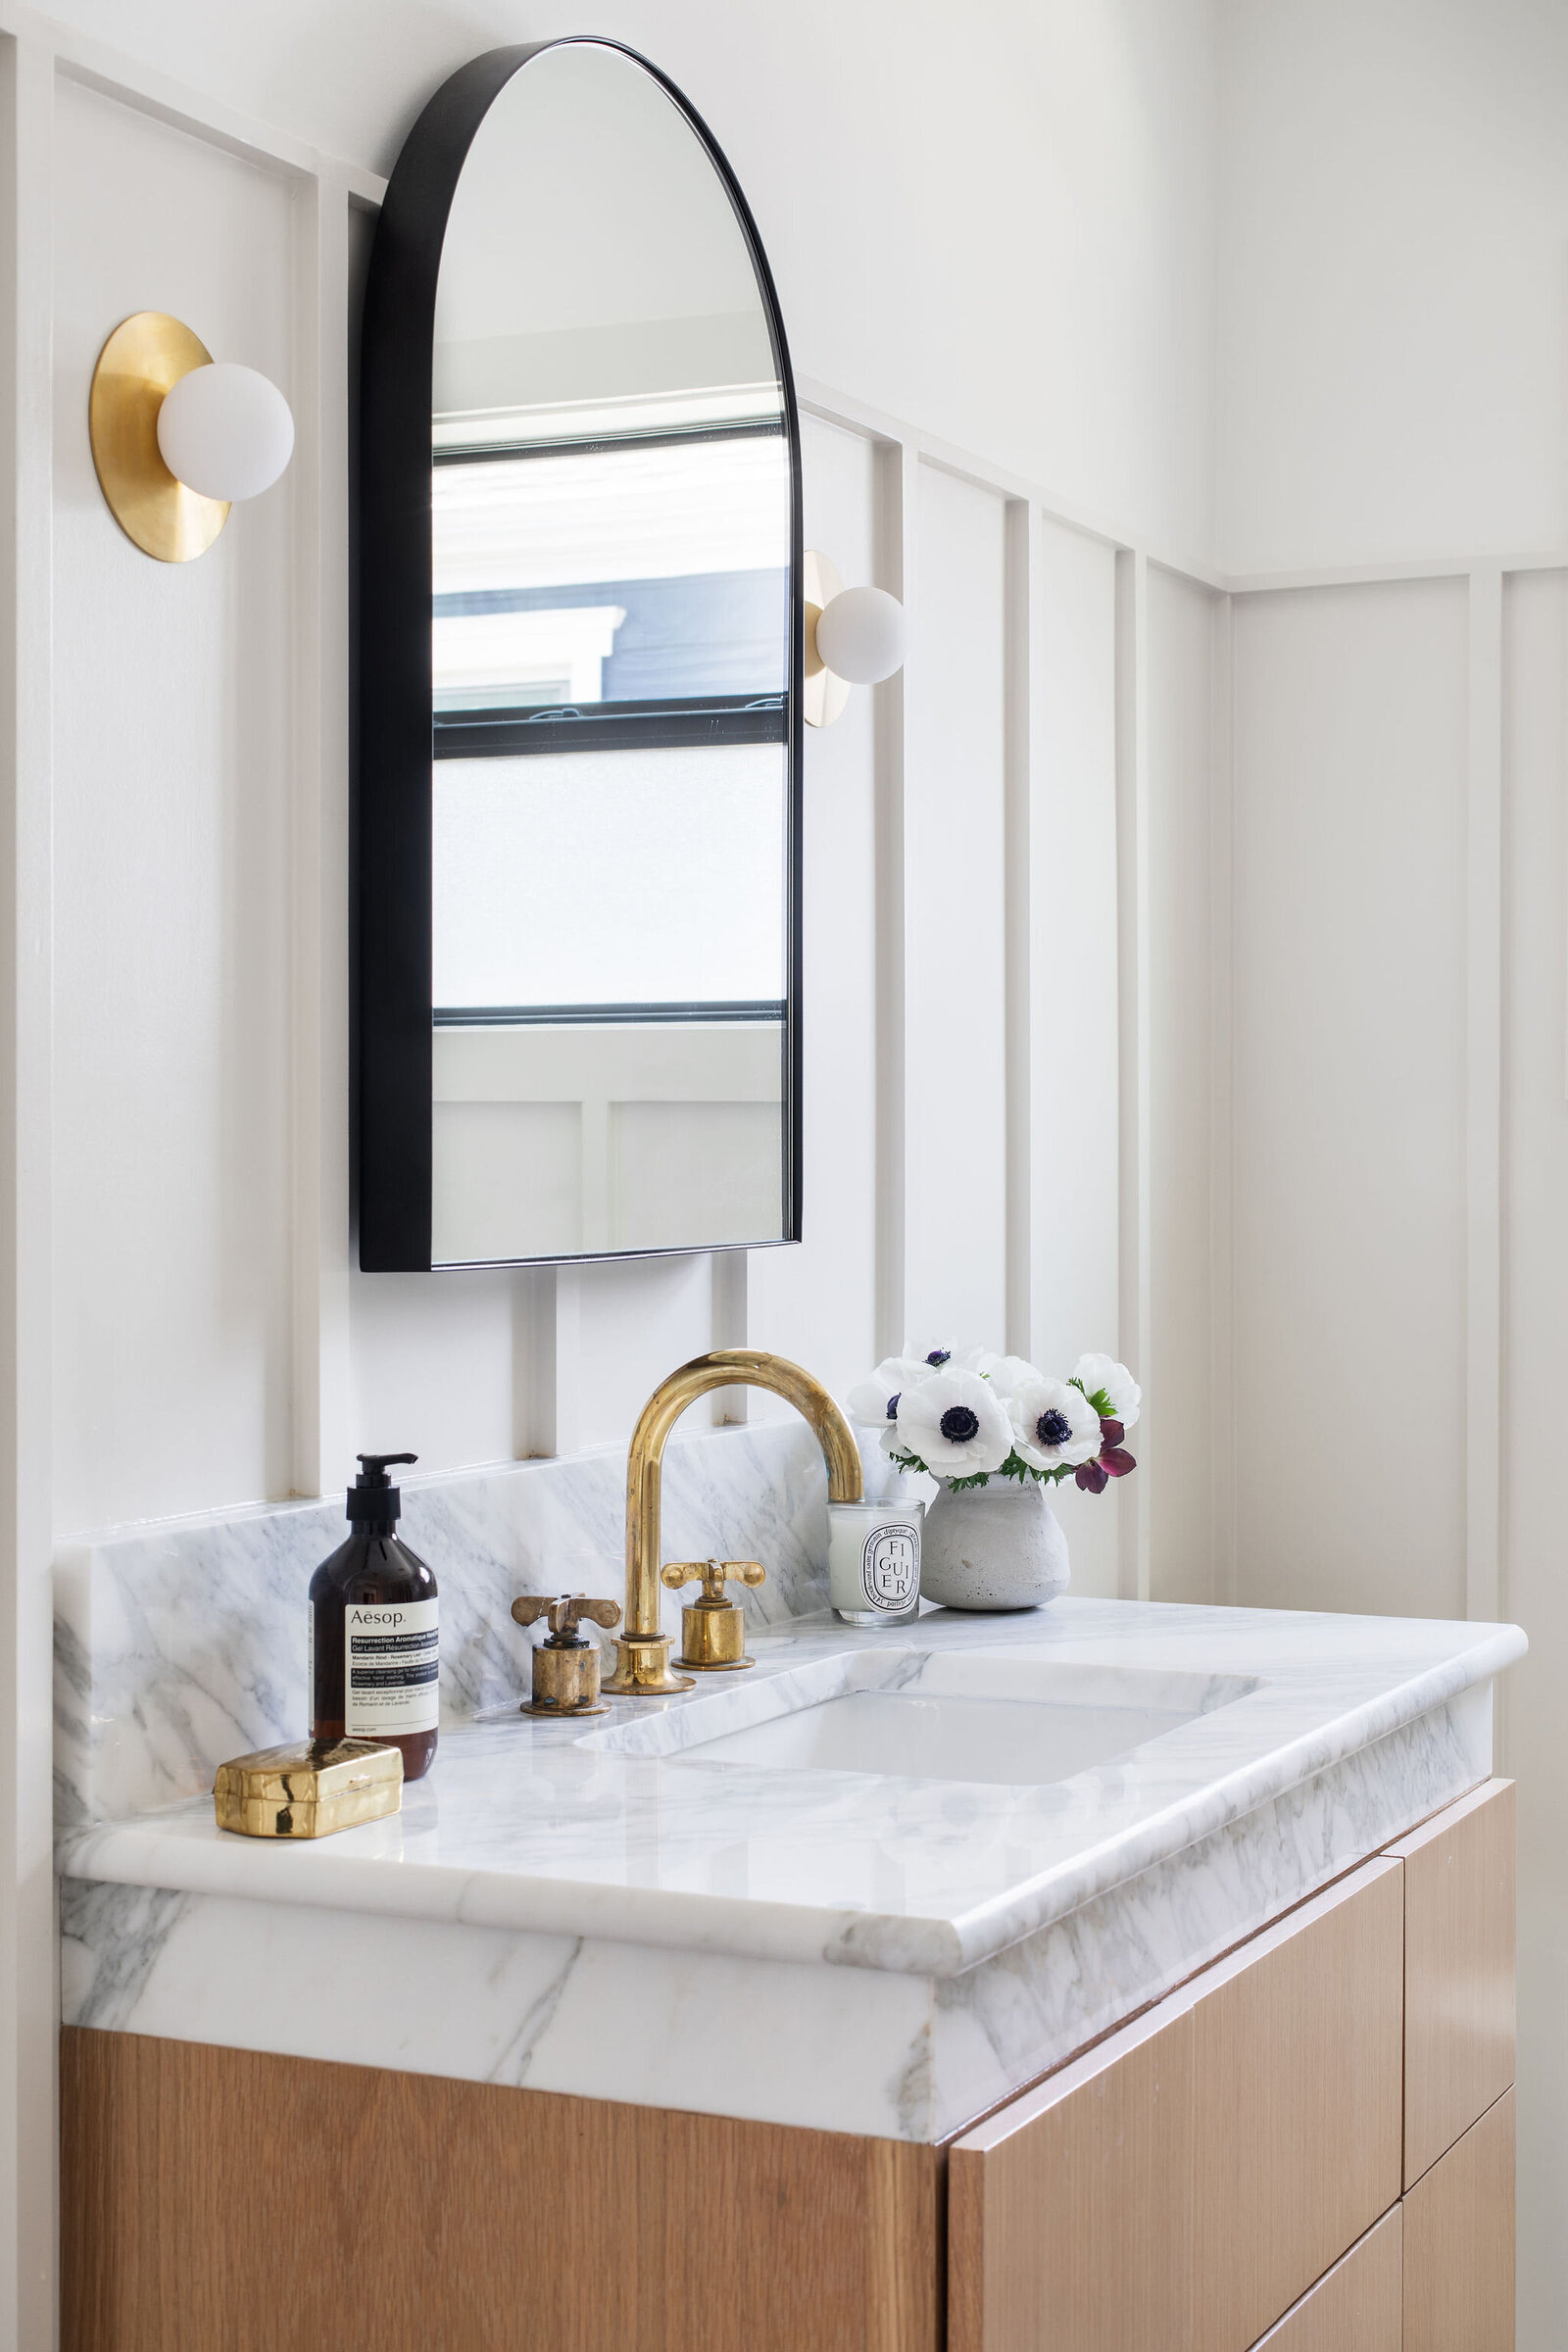 Marble Mitered Edge Countertop in Bathroom_Nuela+Designs